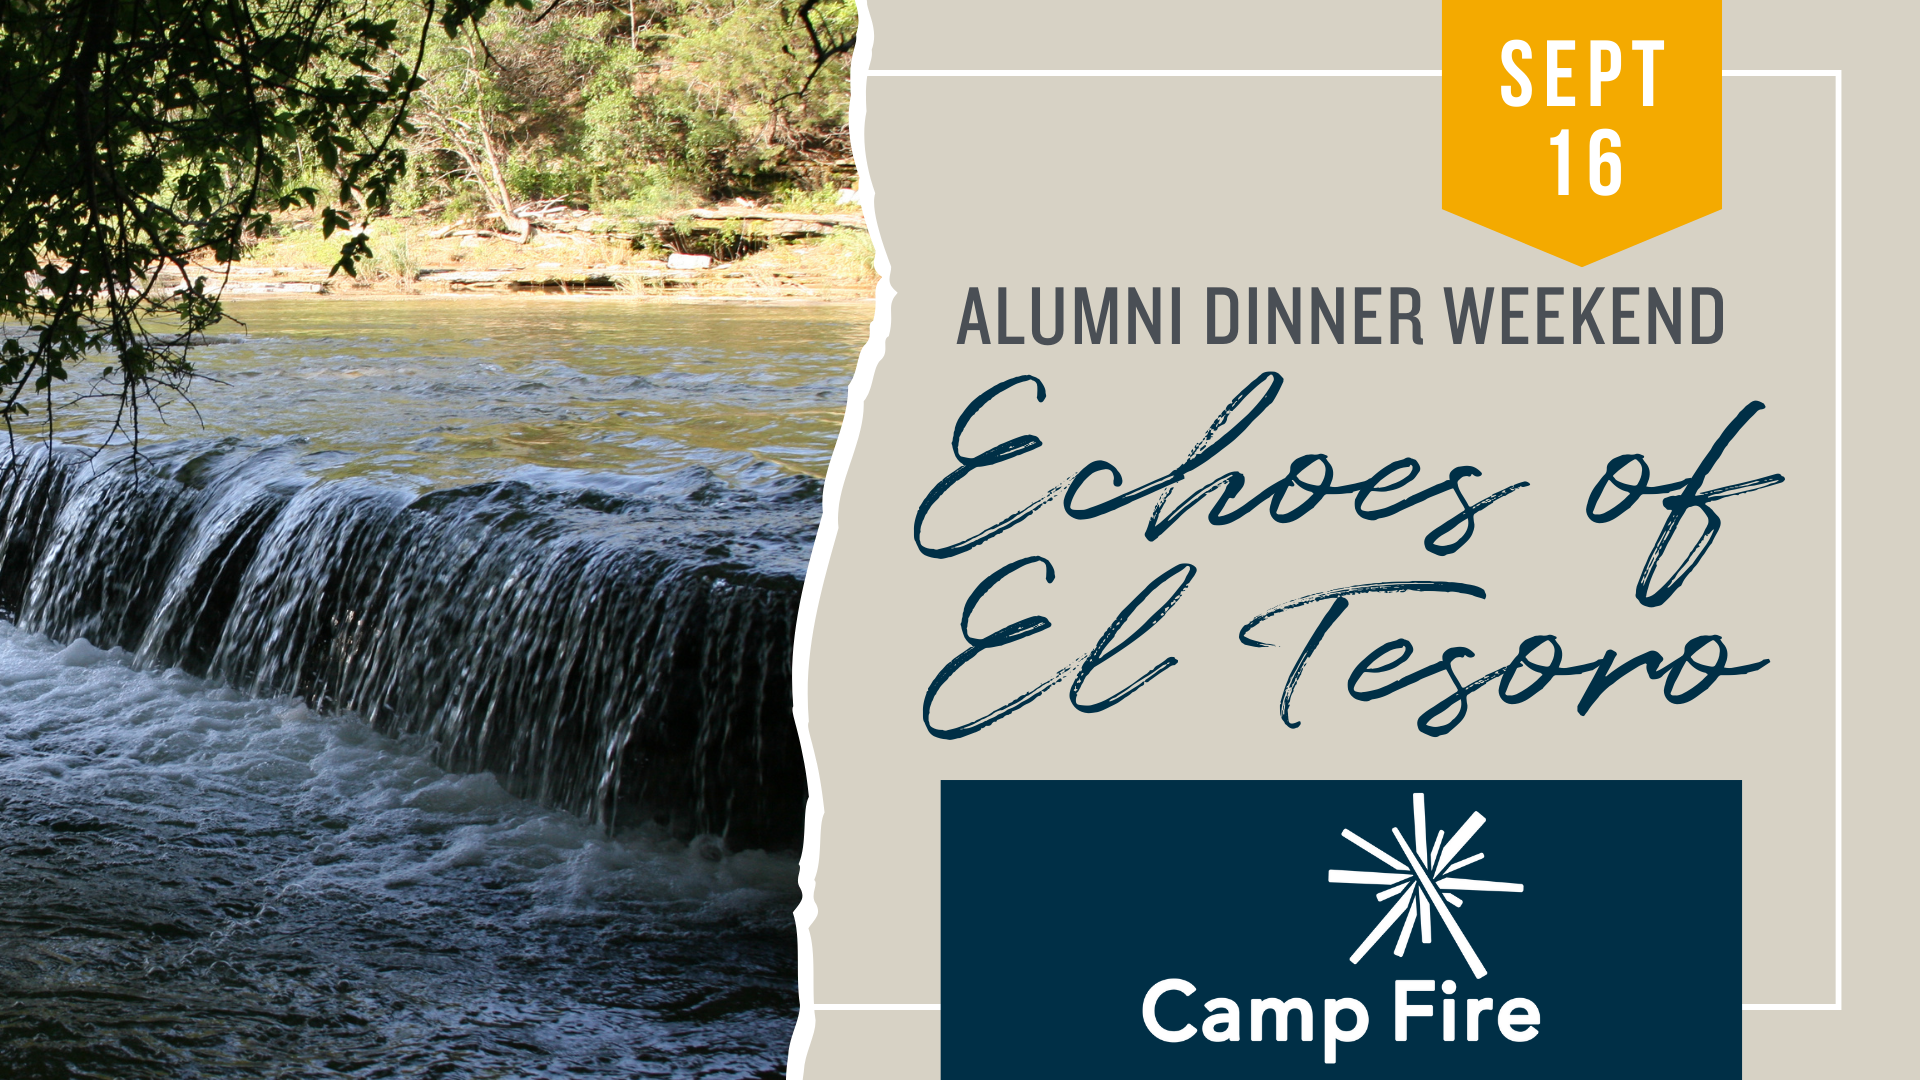 September 16 Alumni Dinner Weekend Echoes of El Tesoro Camp Fire